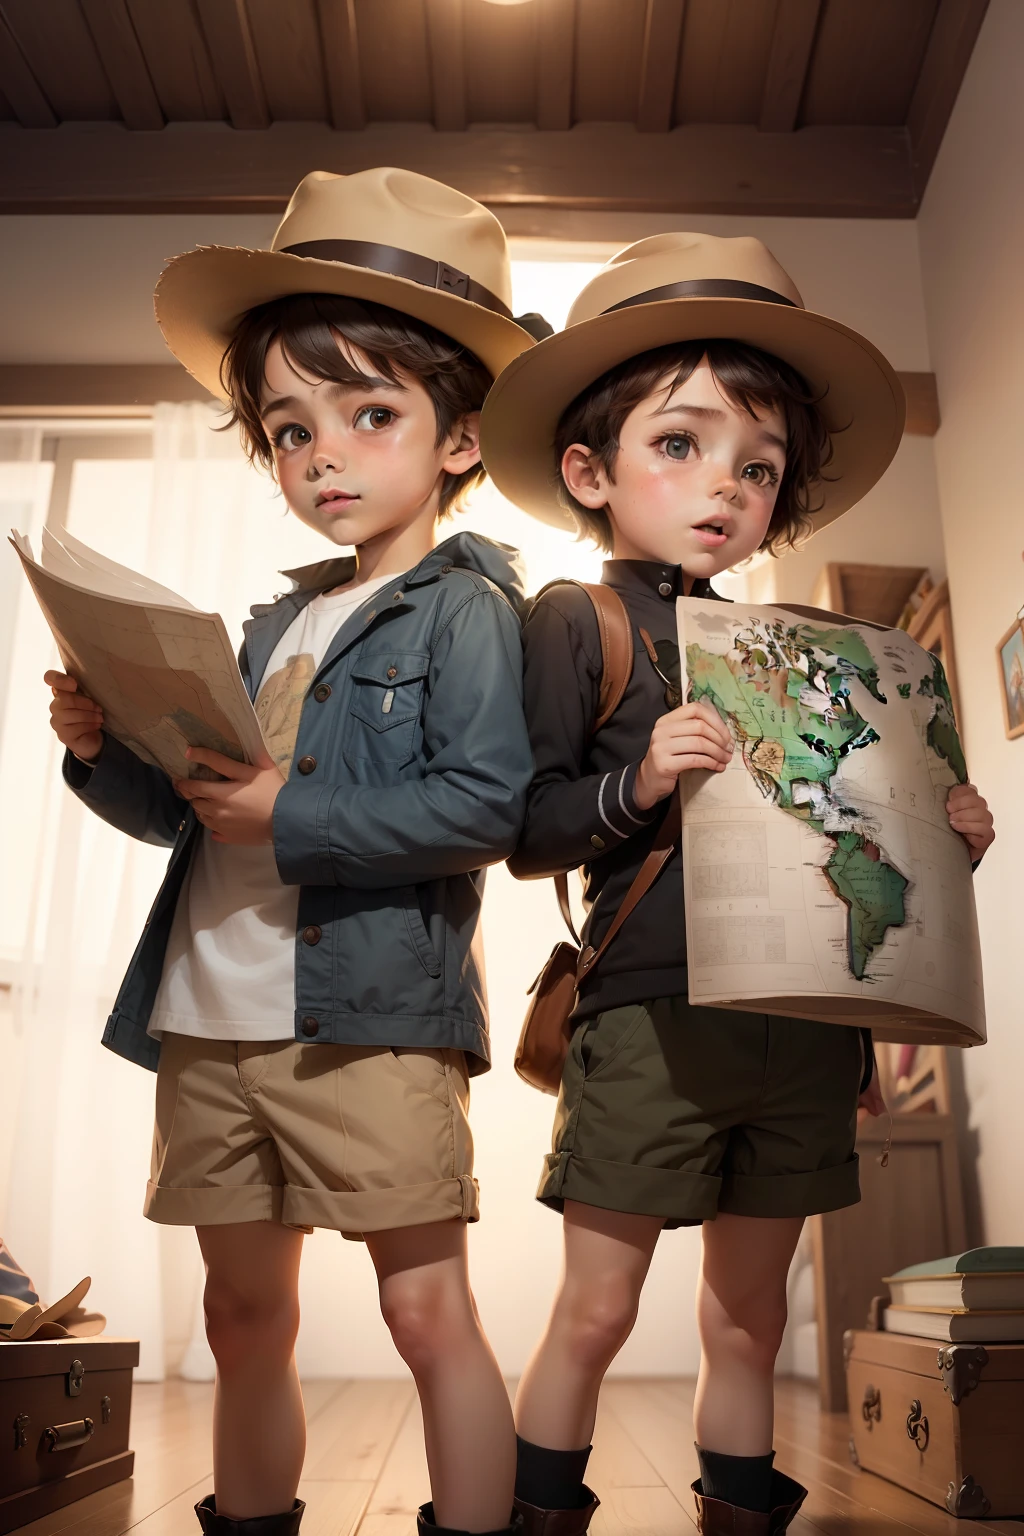 El pequeño explorador, niño con sombrero y niña, eran dos hermanos